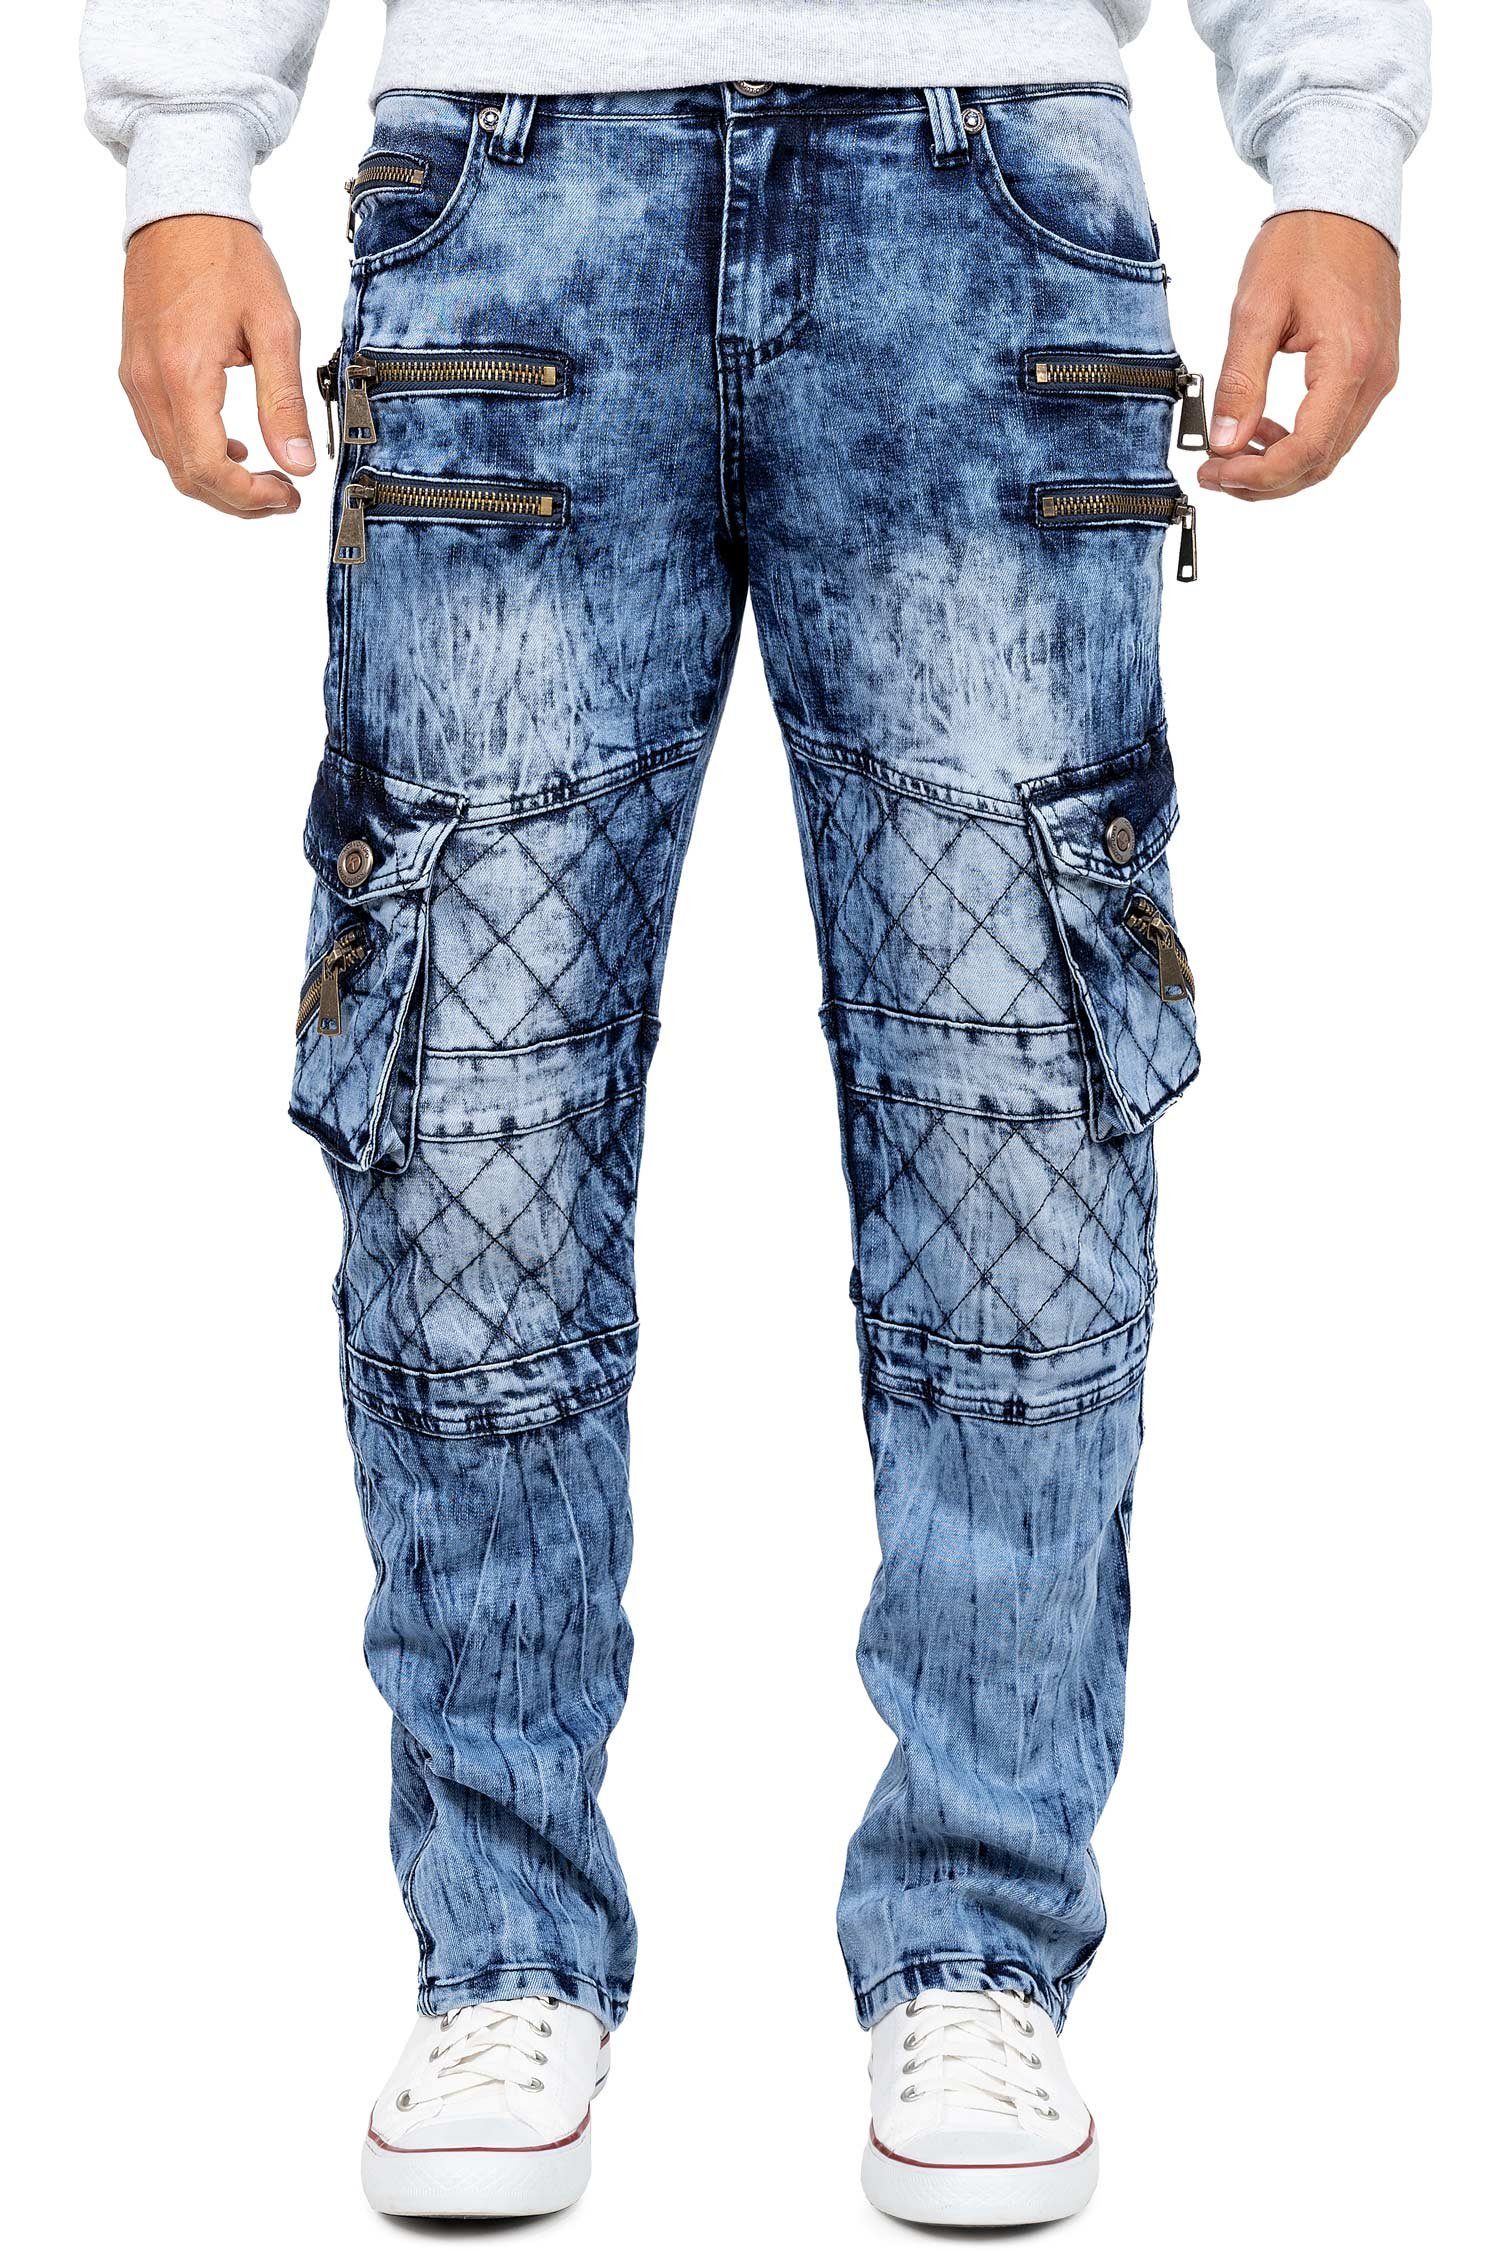 Kosmo Lupo 5-Pocket-Jeans Auffällige Herren Hose BA-KM060 mit Verzierungen und Nieten